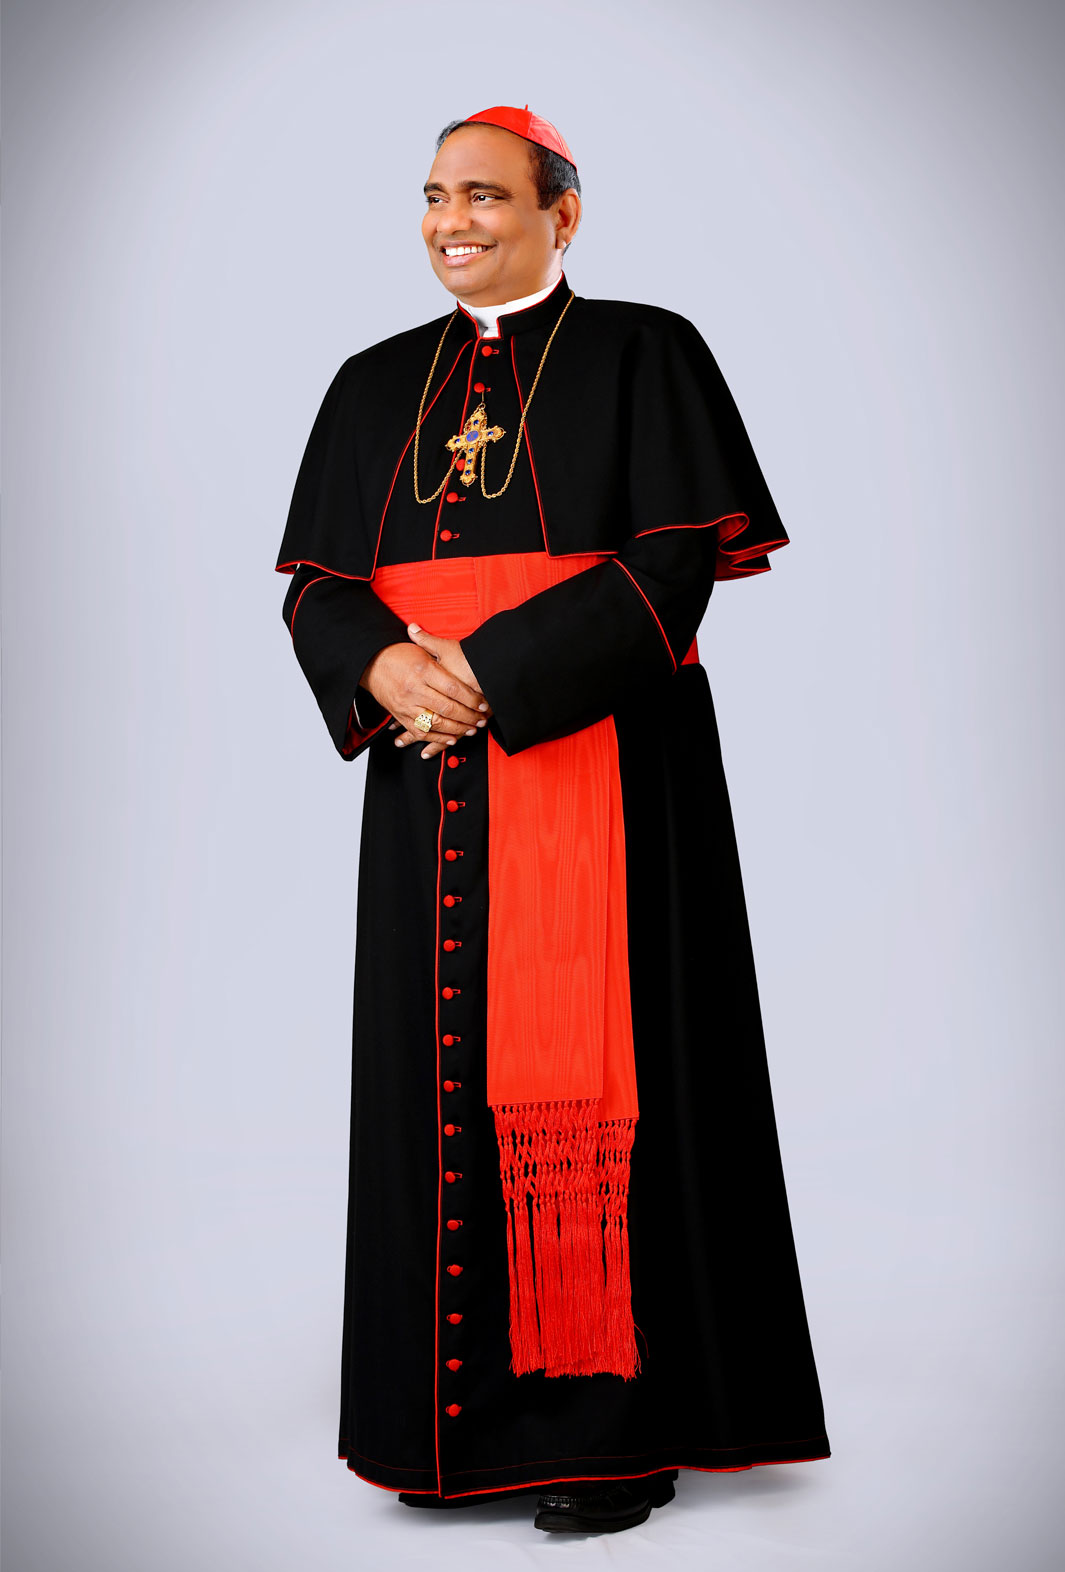 His Eminence Cardinal Poola Anthony